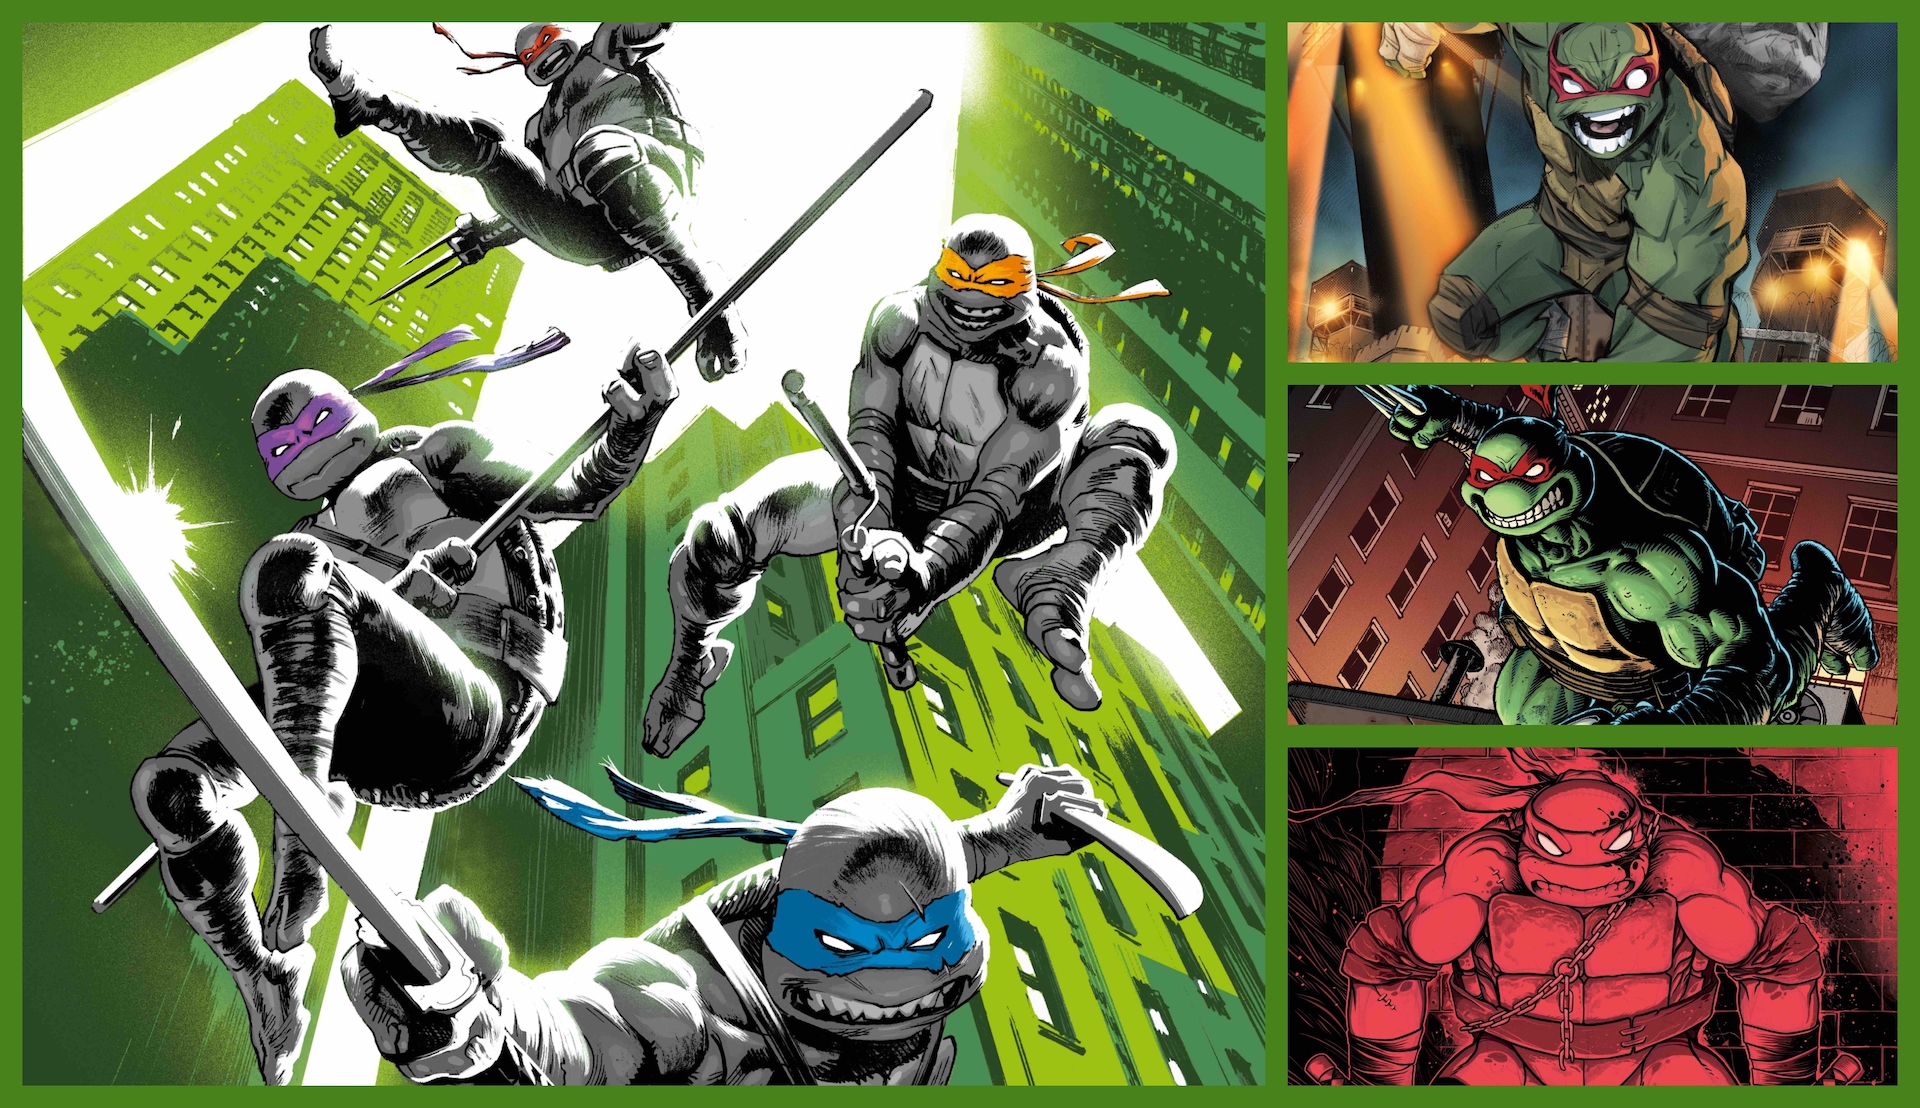 New 'Teenage Mutant Ninja Turtles' #1 covers revealed